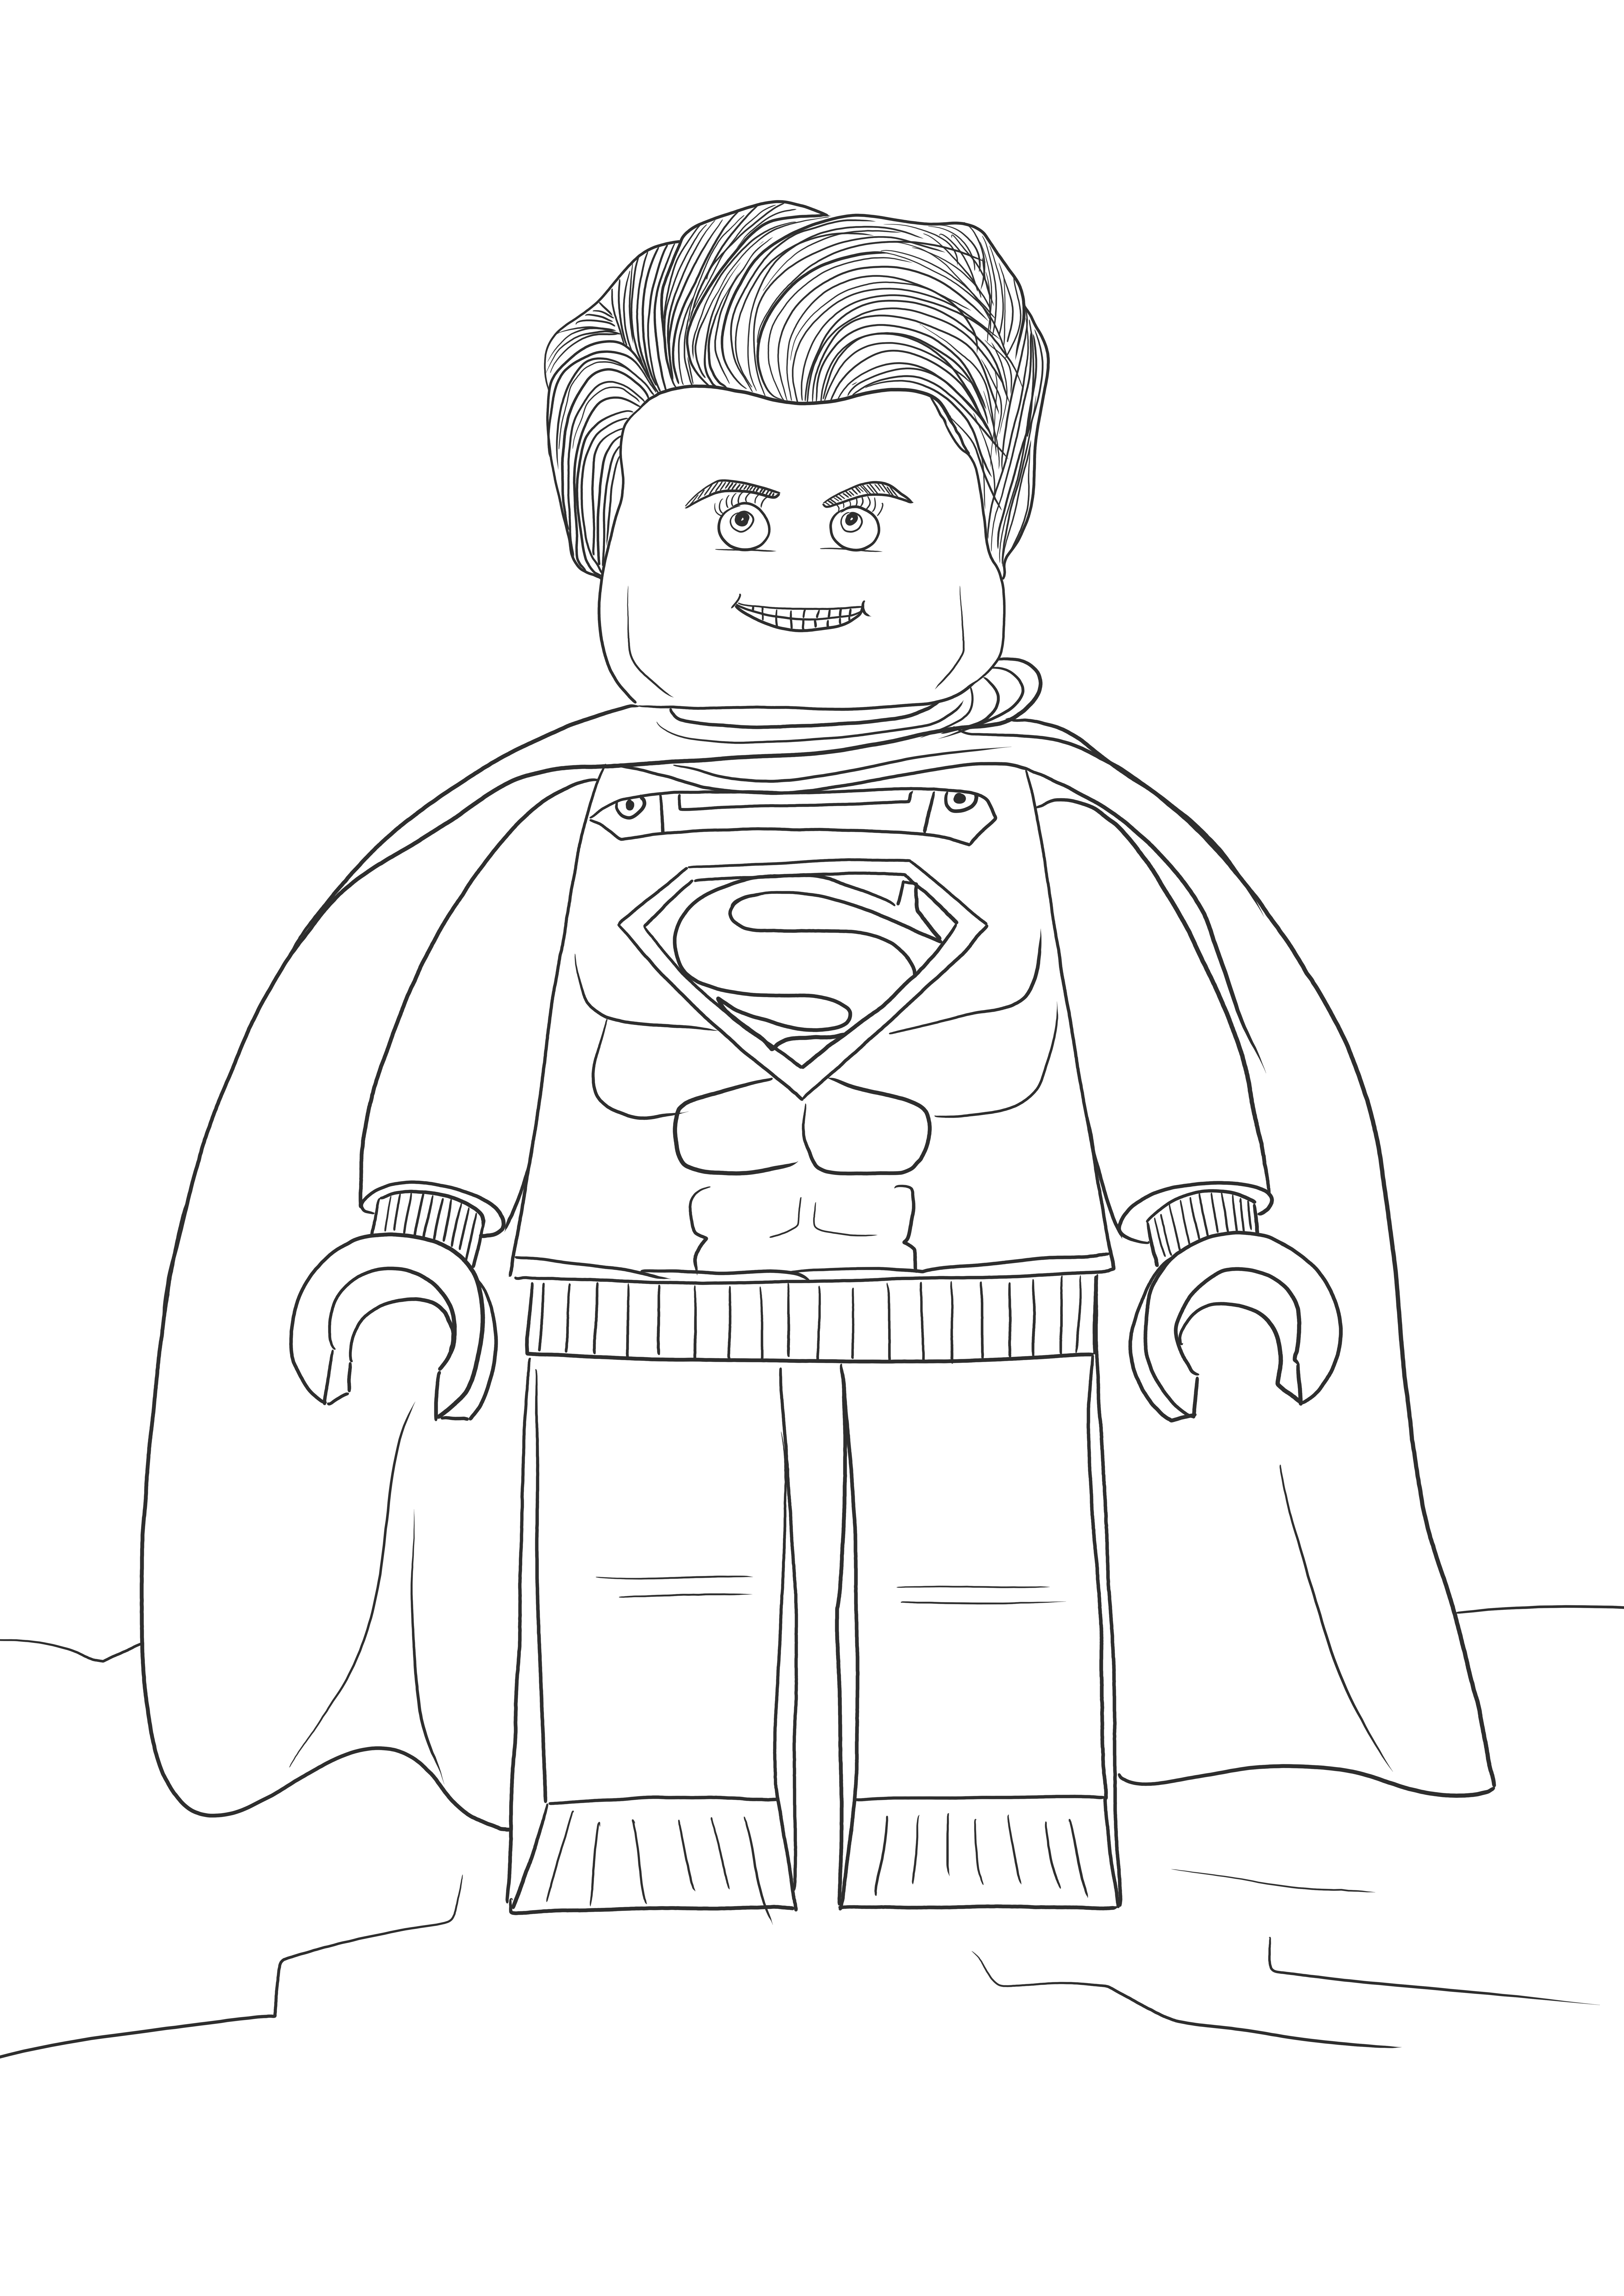 Lego Superman gratis per stampare o scaricare immagini da colorare per bambini